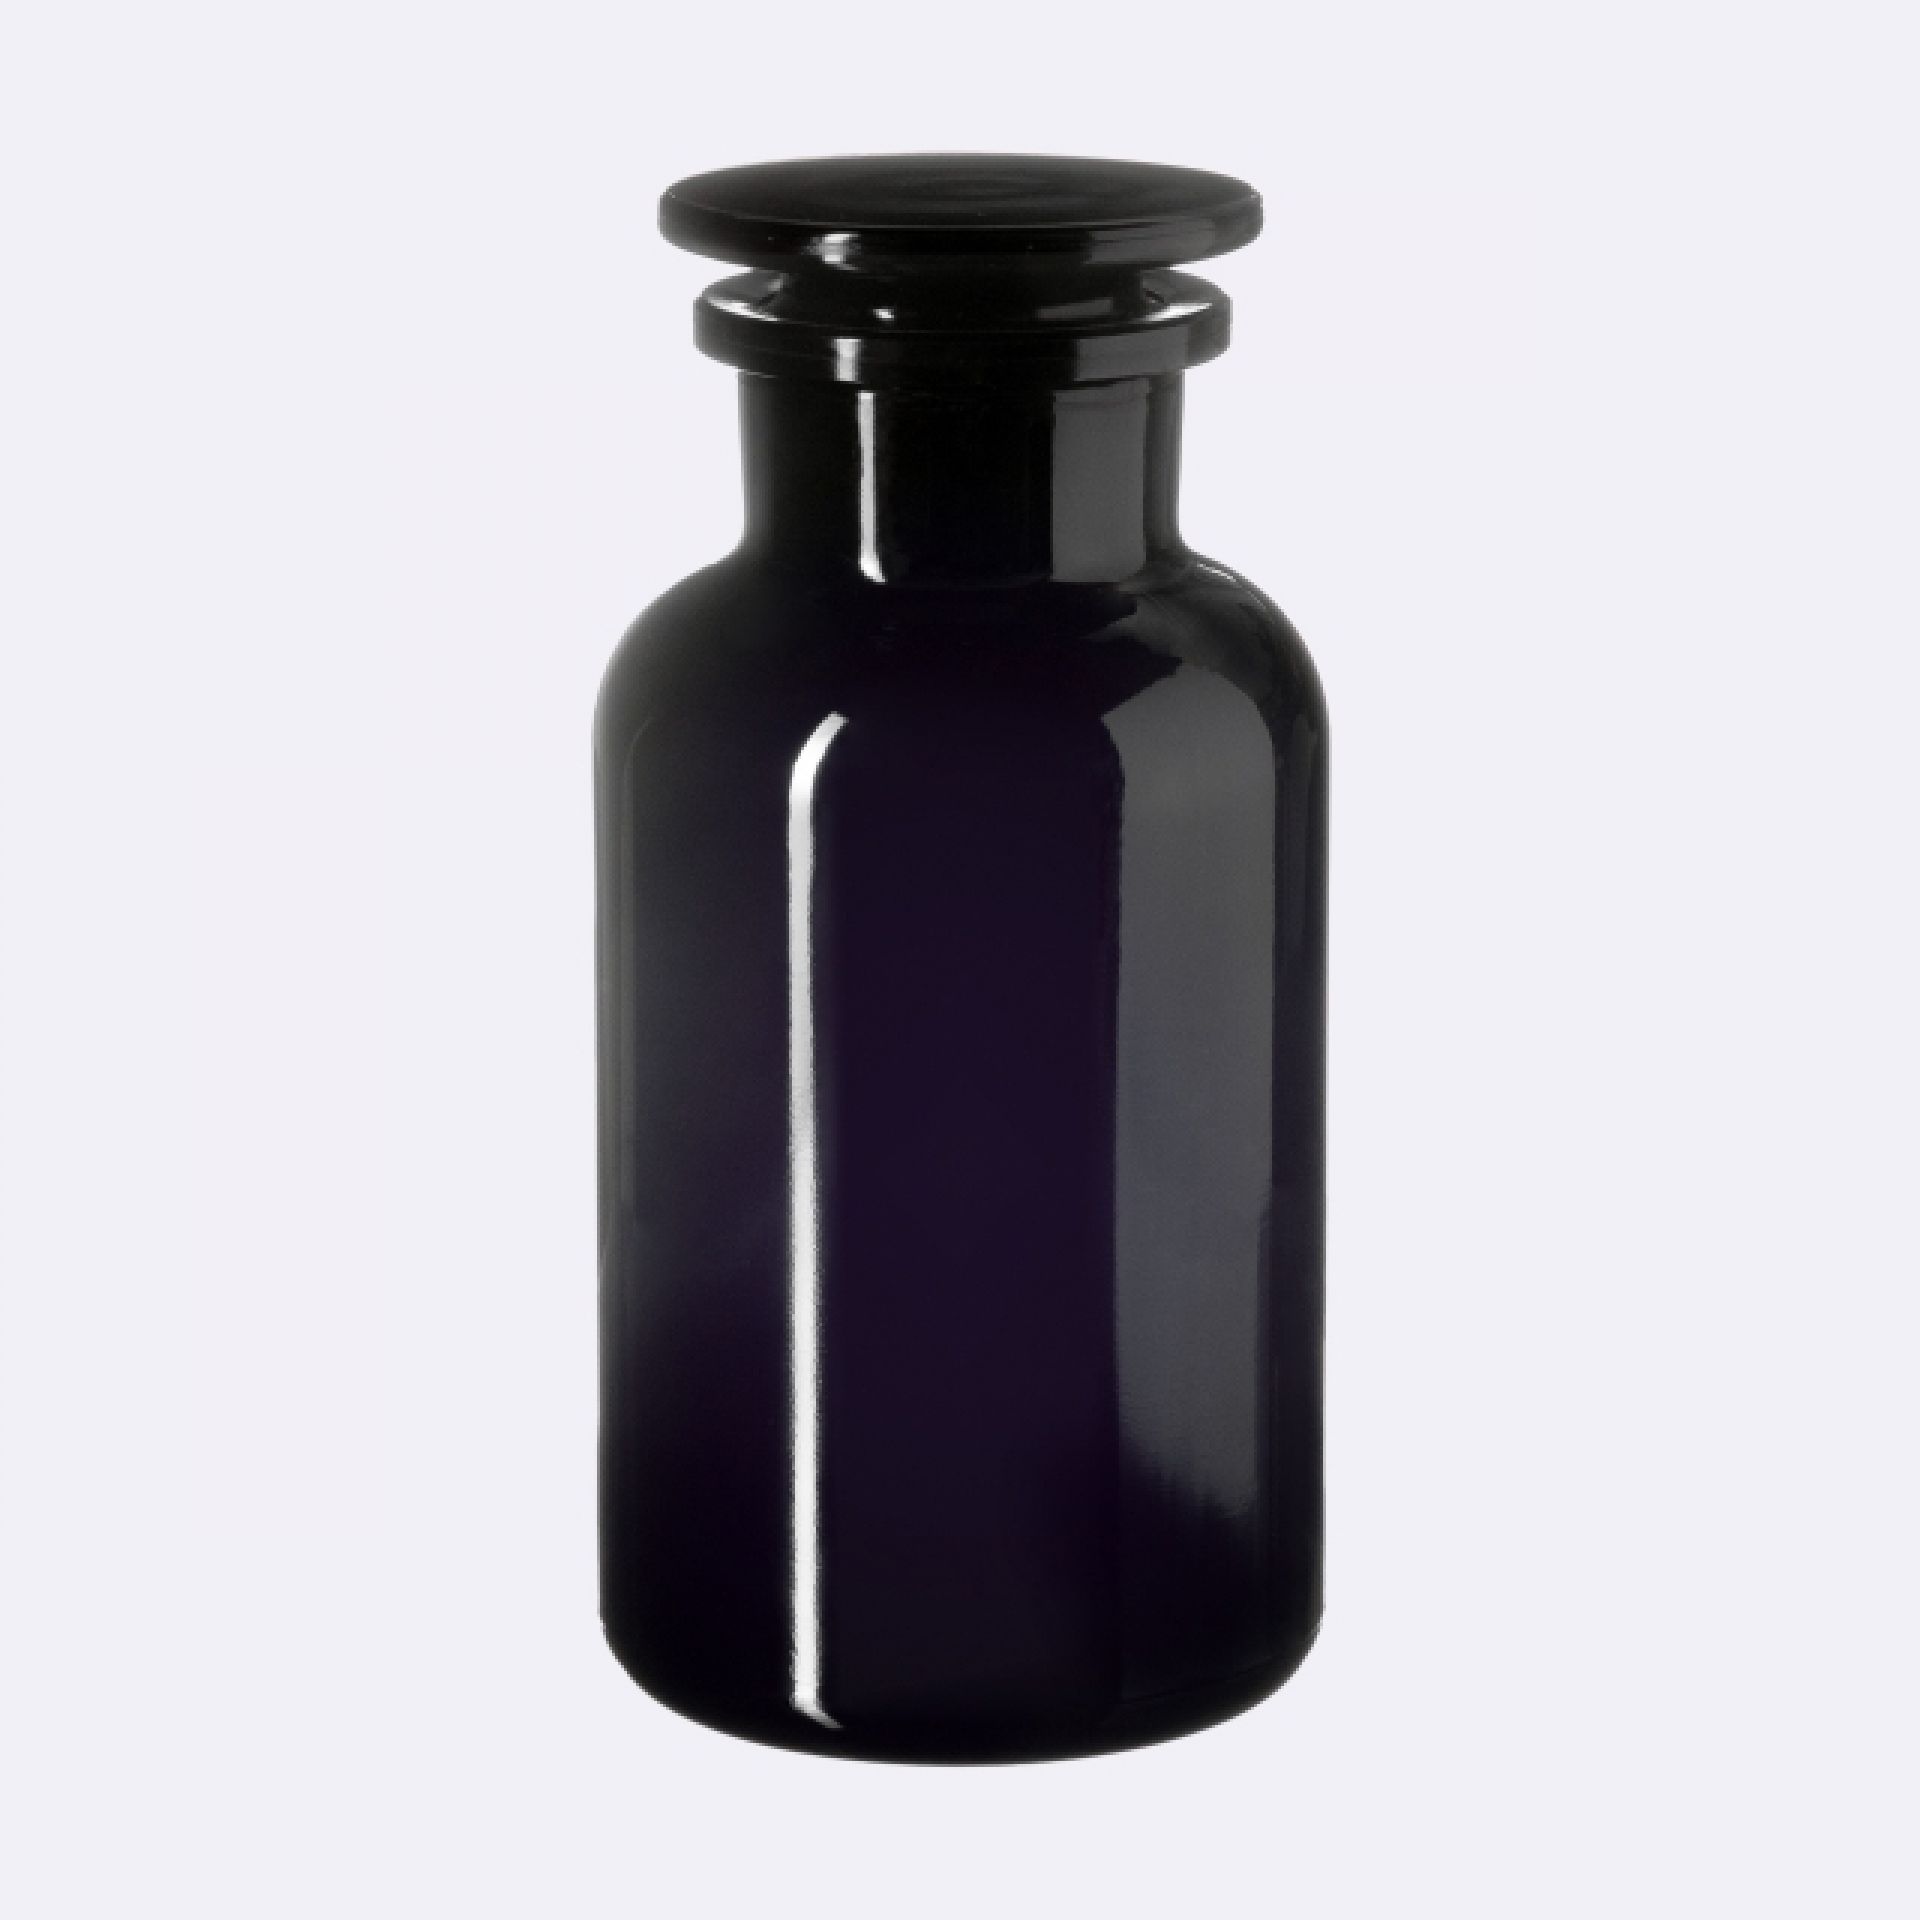 Apothecary jar Libra 500ml, glass stopper, Miron